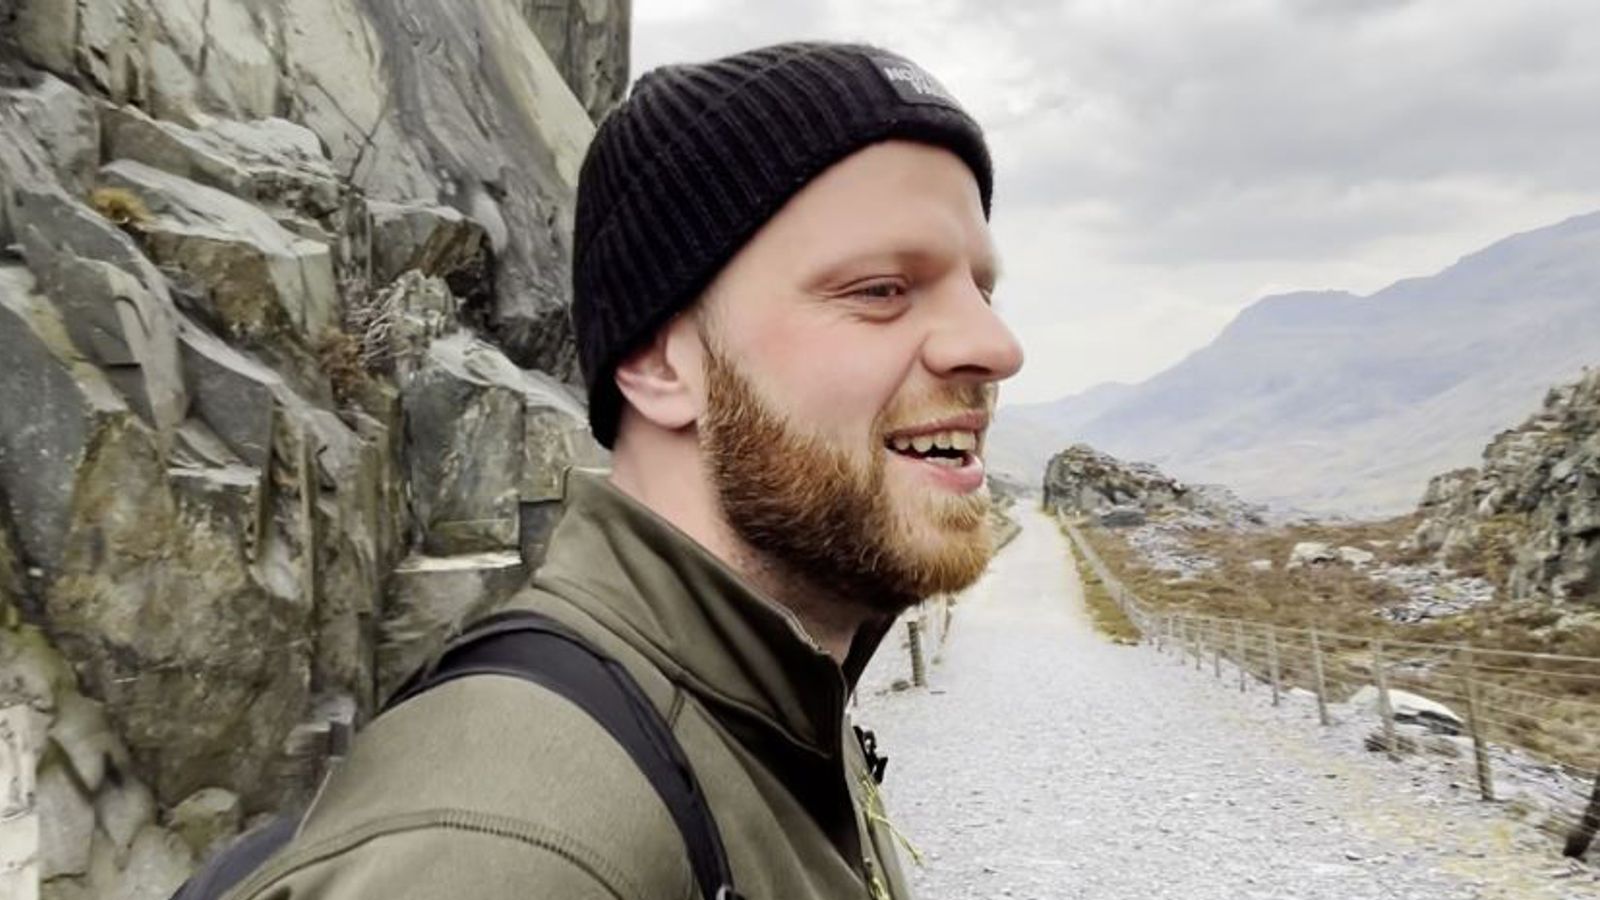 Ейдън Рош: Британски турист, изчезнал в Швейцария, тъй като семейството и приятелите са „изключително притеснени“